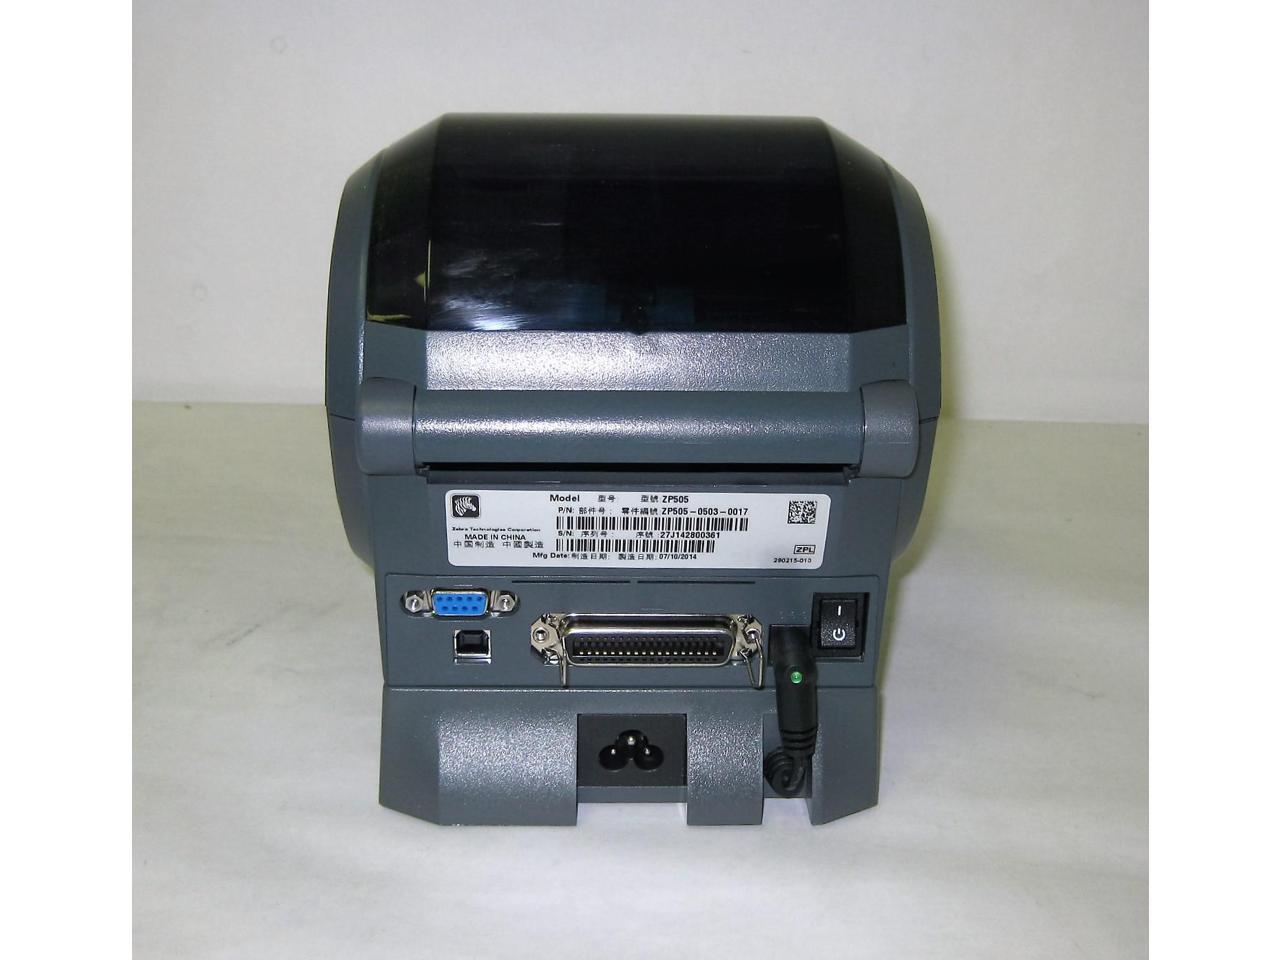 Refurbished Zebra Zp505 Thermal Label Printer Usb Serial Parallel Zp505 0503 0017 5850